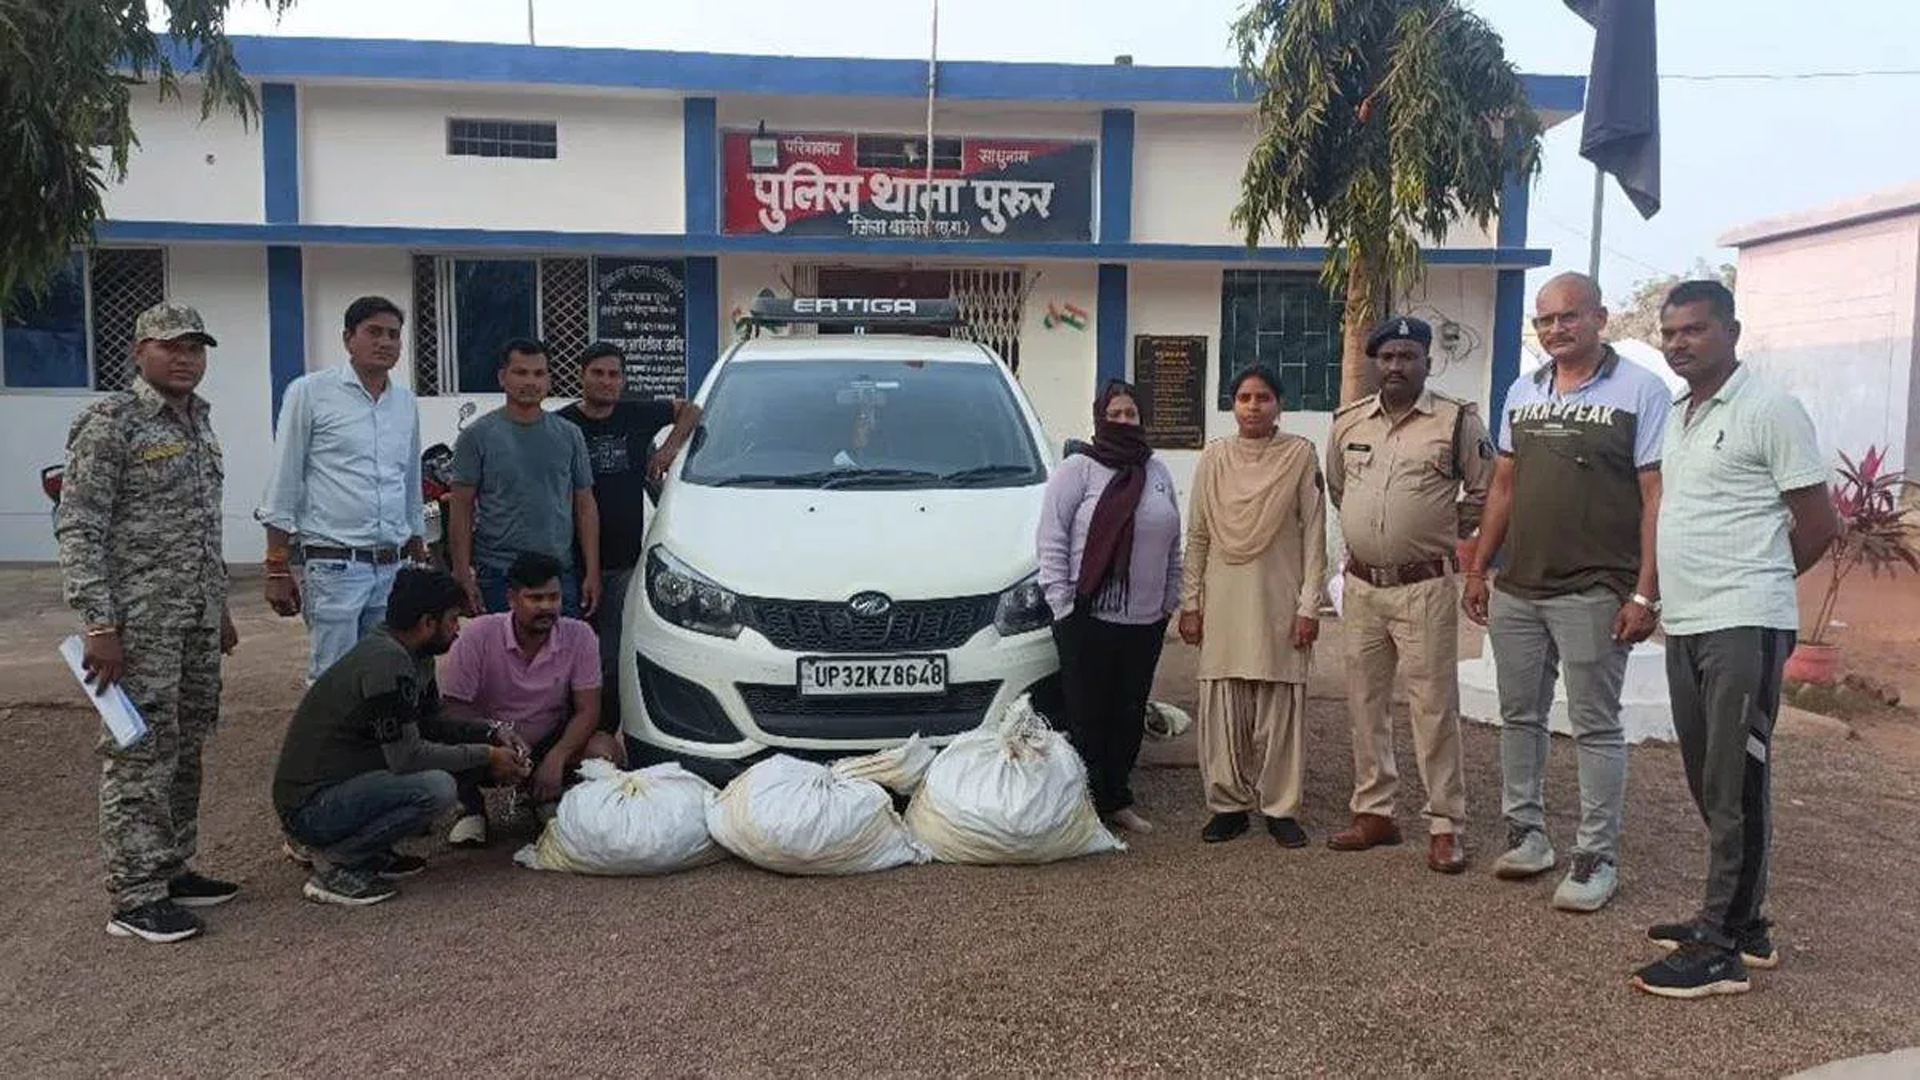 Ganja worth lakhs smuggled in luxury car, 3 smugglers arrested